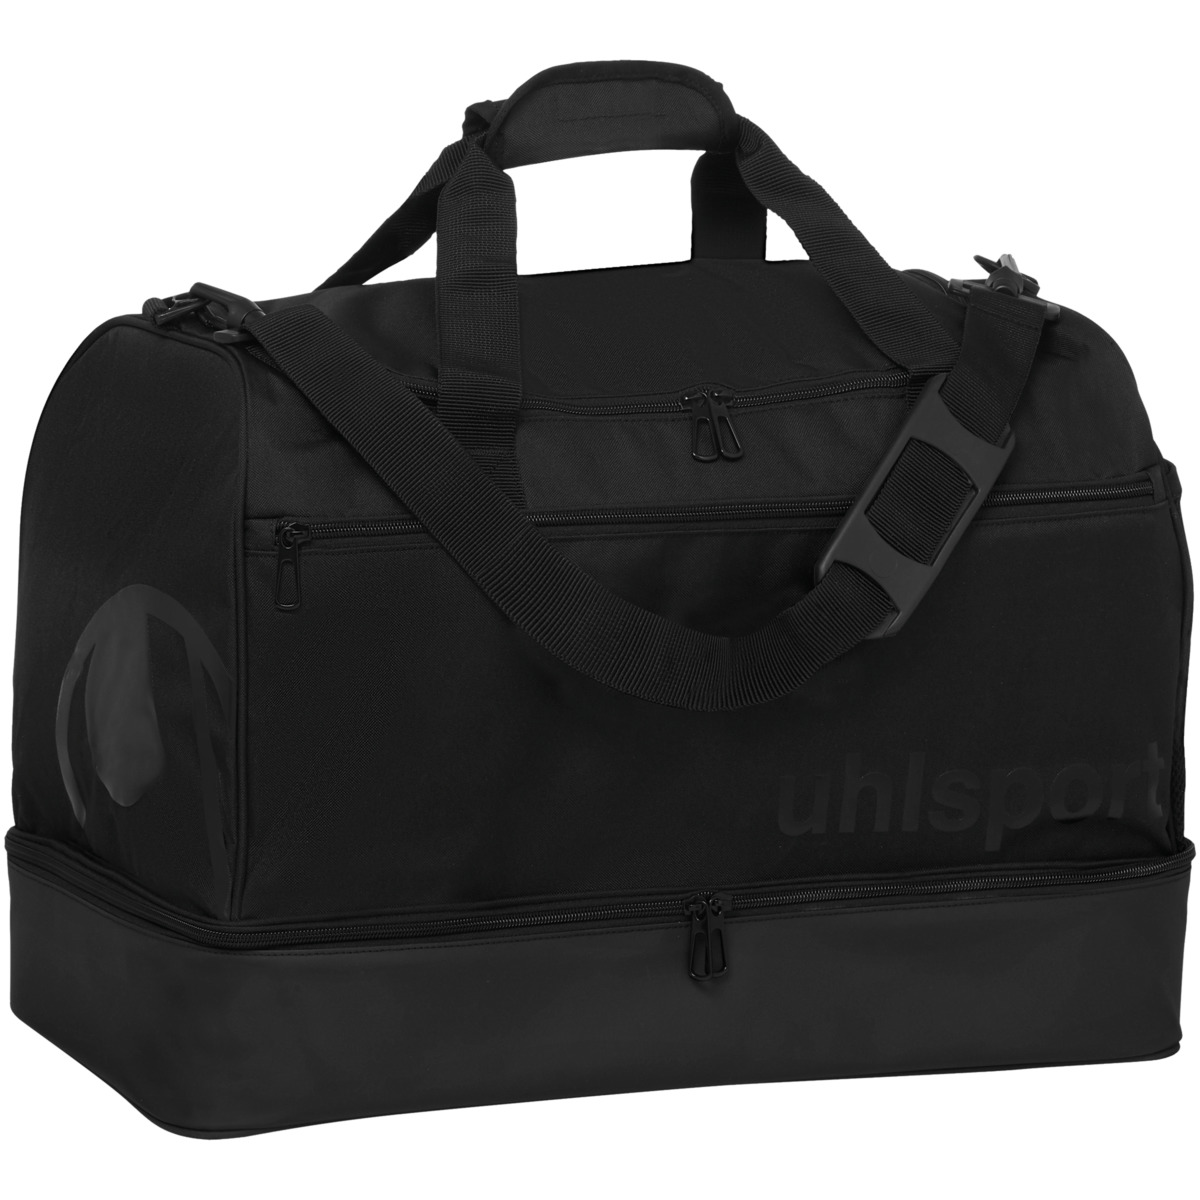 Uhlsport Cape Bag Backpack Bag Black F02 